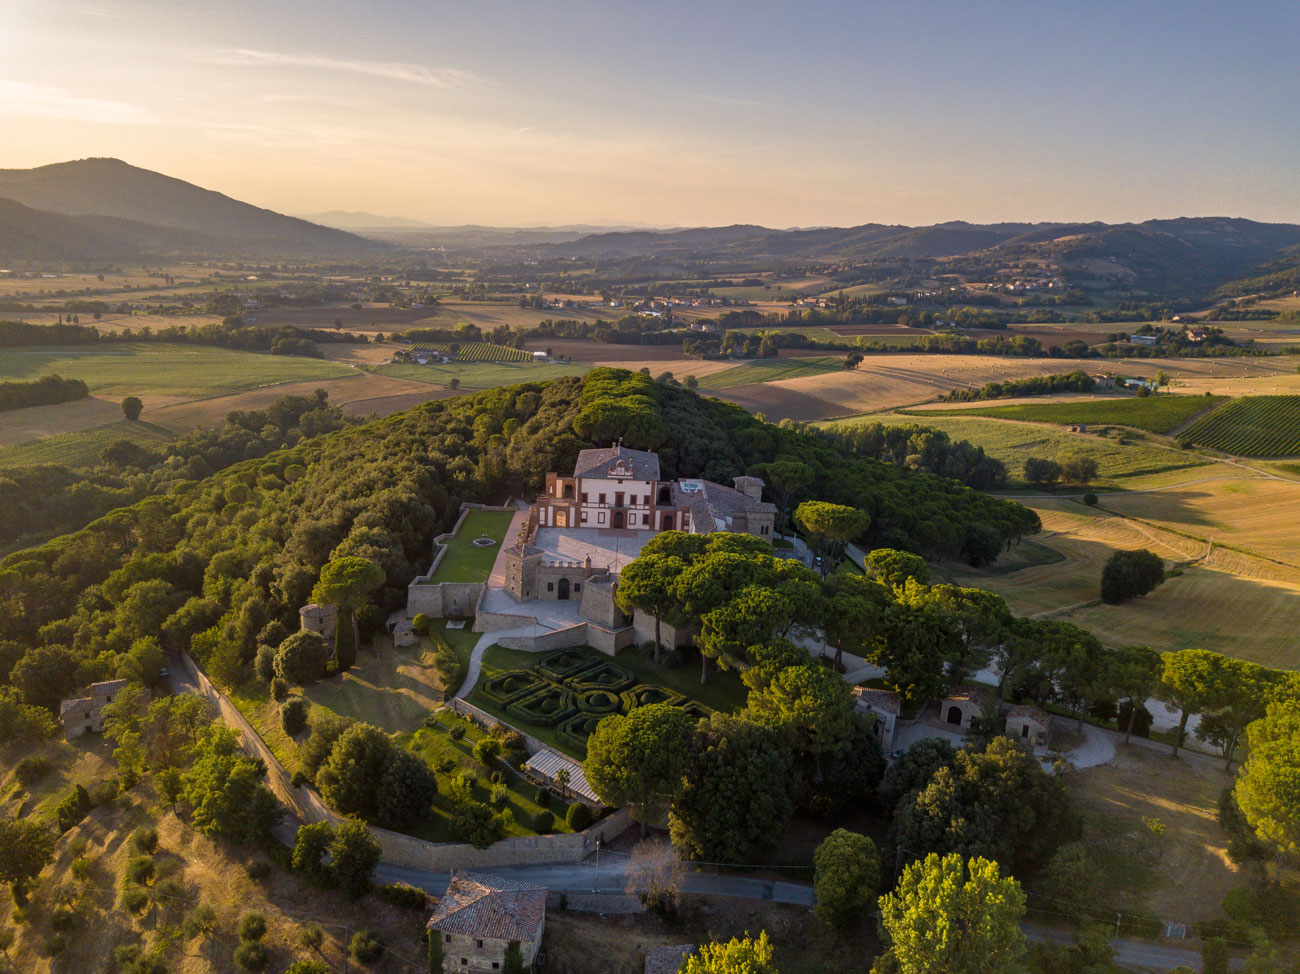 luxury castle wedding wedding-venues-in-italy - catalog pdf download free - Top Destination wedding venue in Italy - Dream On wedding planner in umbria